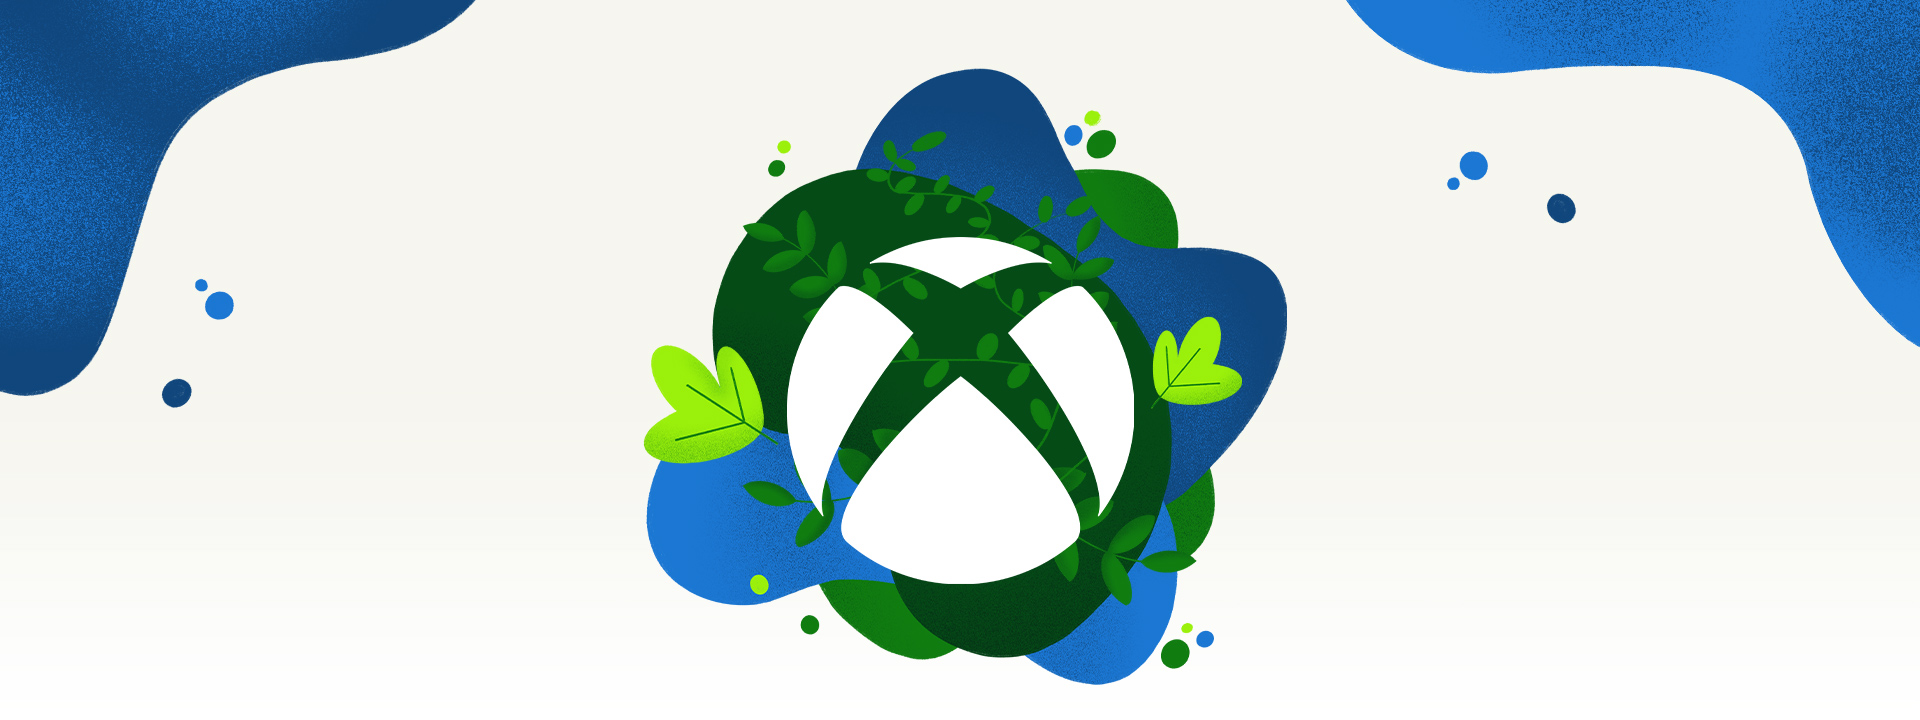 Logo Xbox otoczone jest roślinnością i rozbryzgami błękitnej wody.